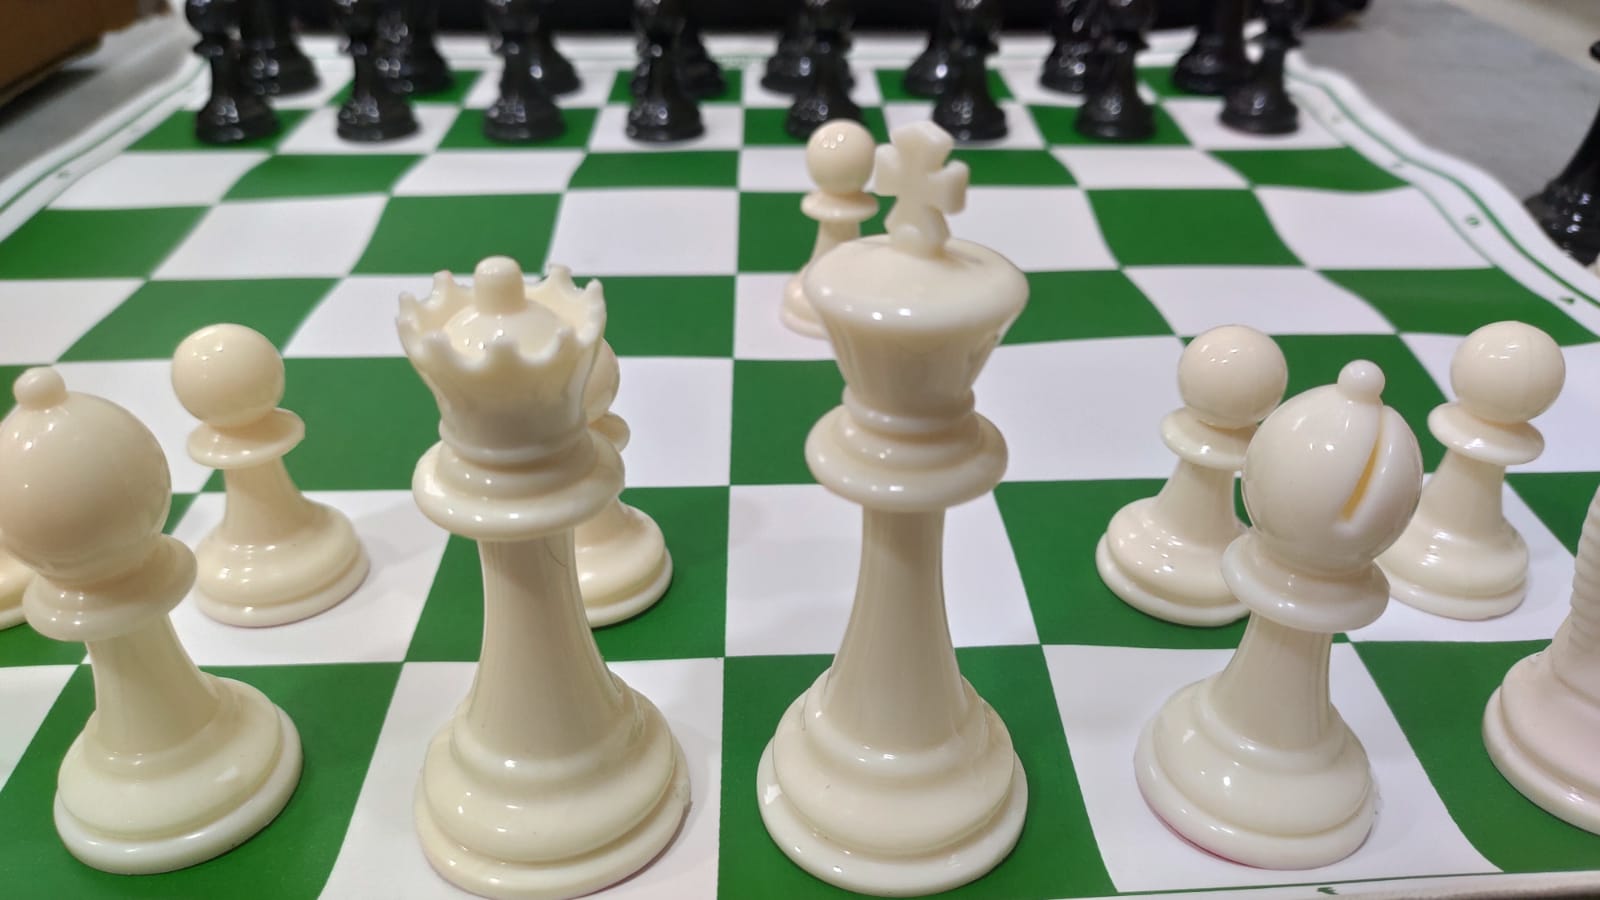 chessbox chess set